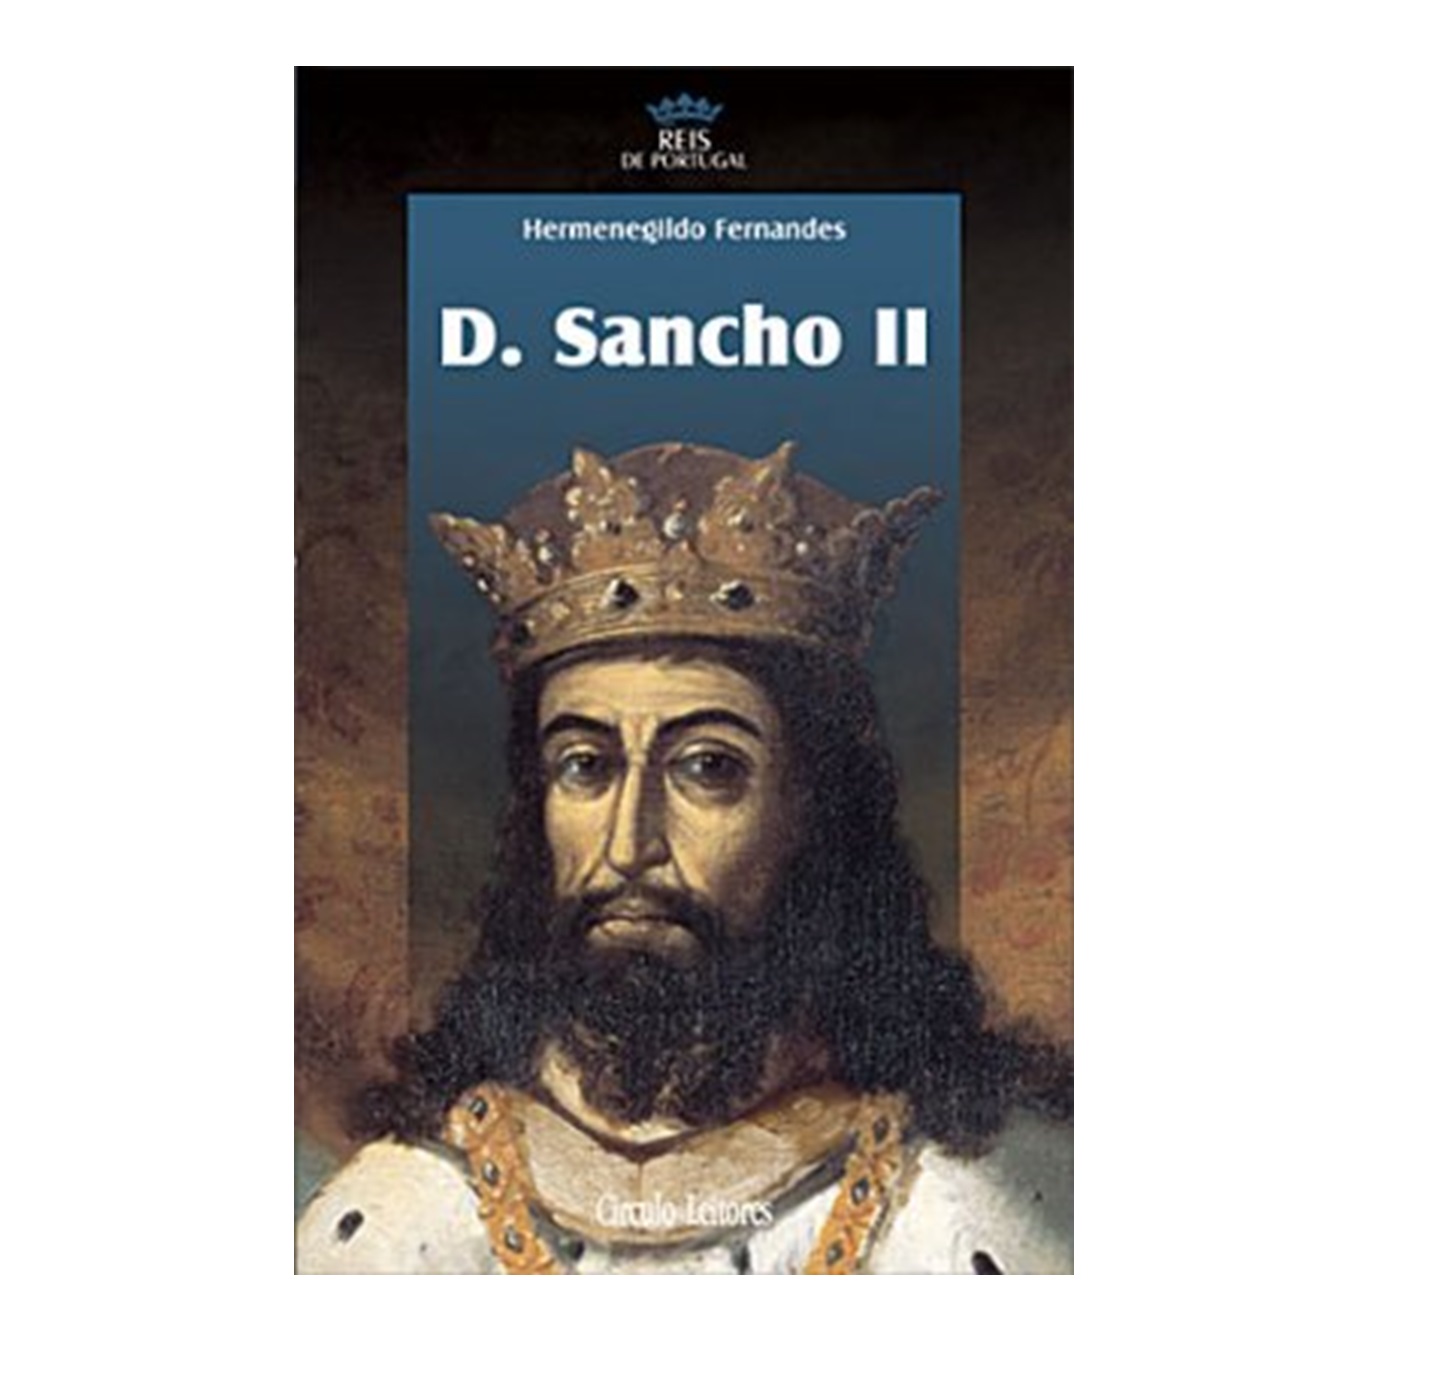  D. Sancho II